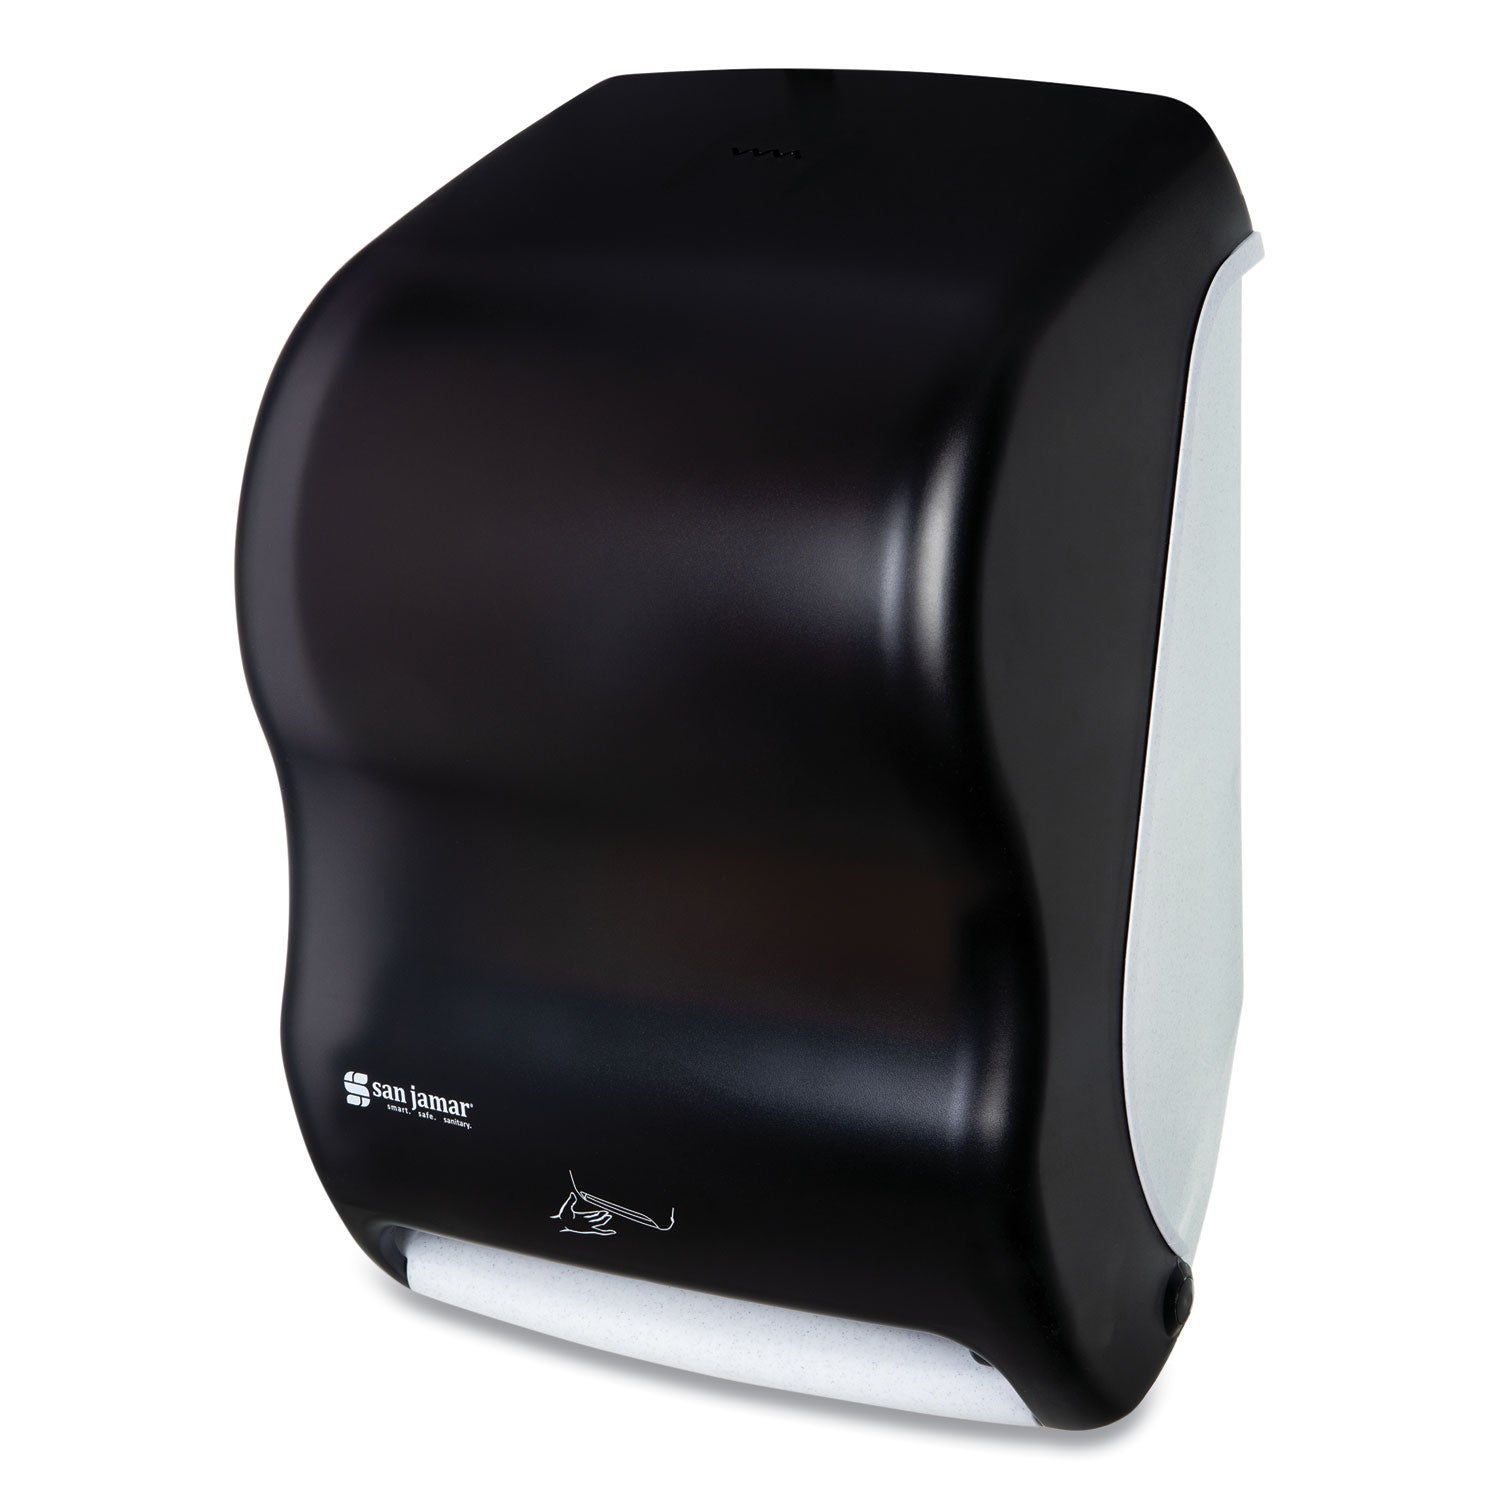 smart-system-with-iq-sensor-towel-dispenser-1175-x-9-x-155-black-pearl_sjmt1400tbk - 2